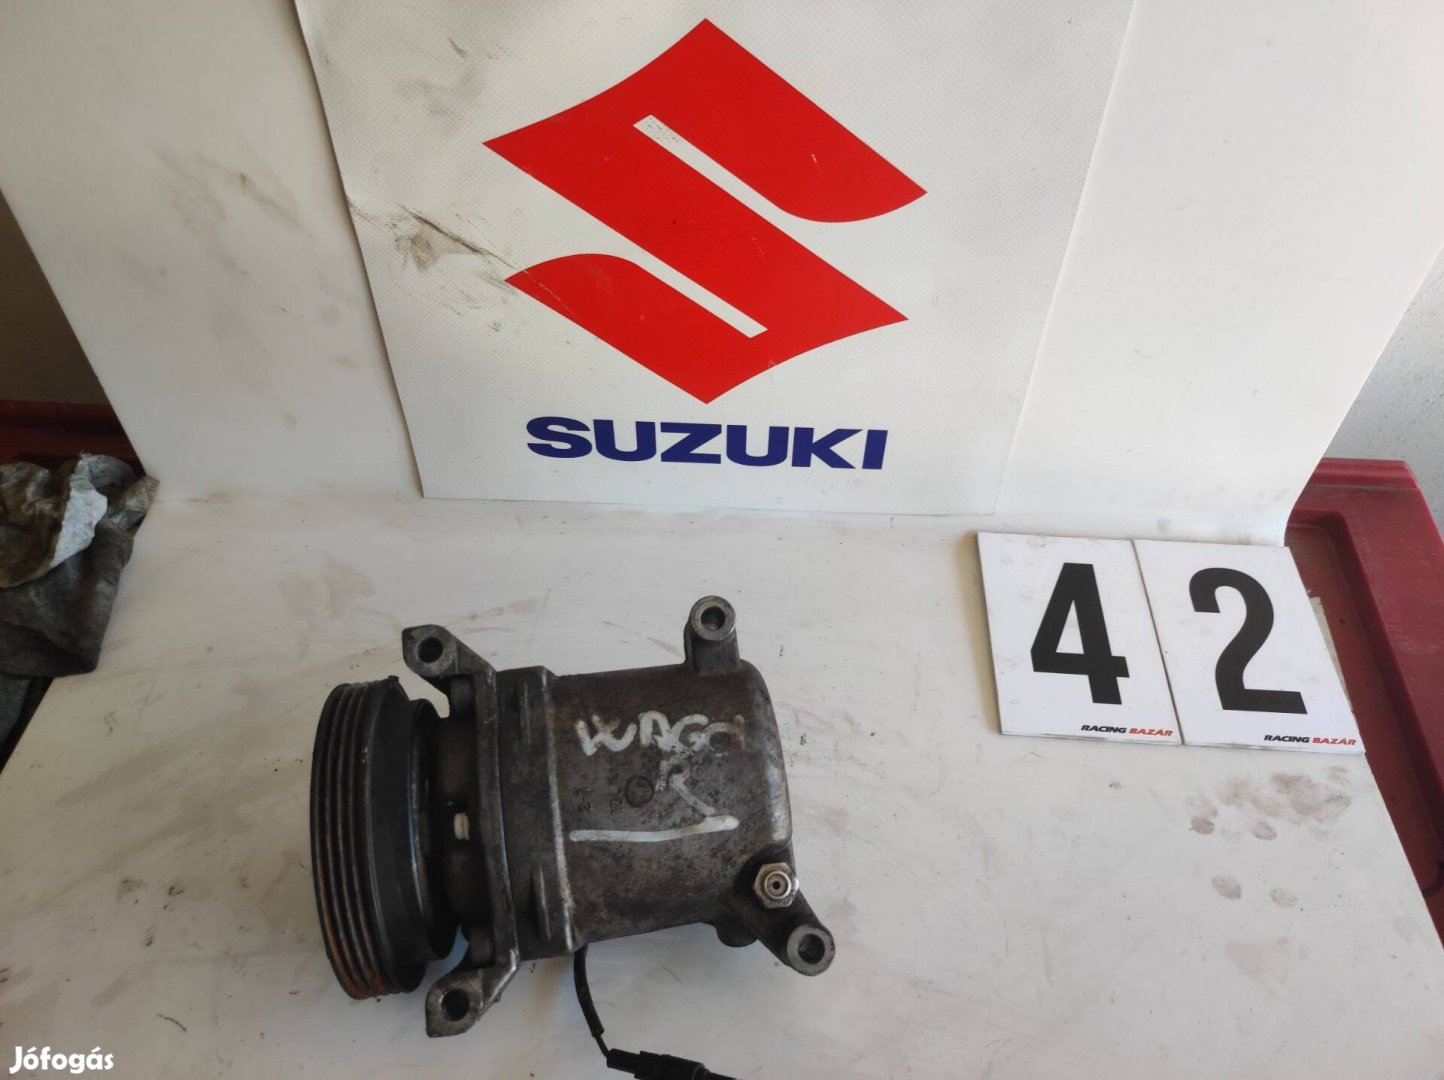 Suzuki wagonr wagon klíma kompresszor